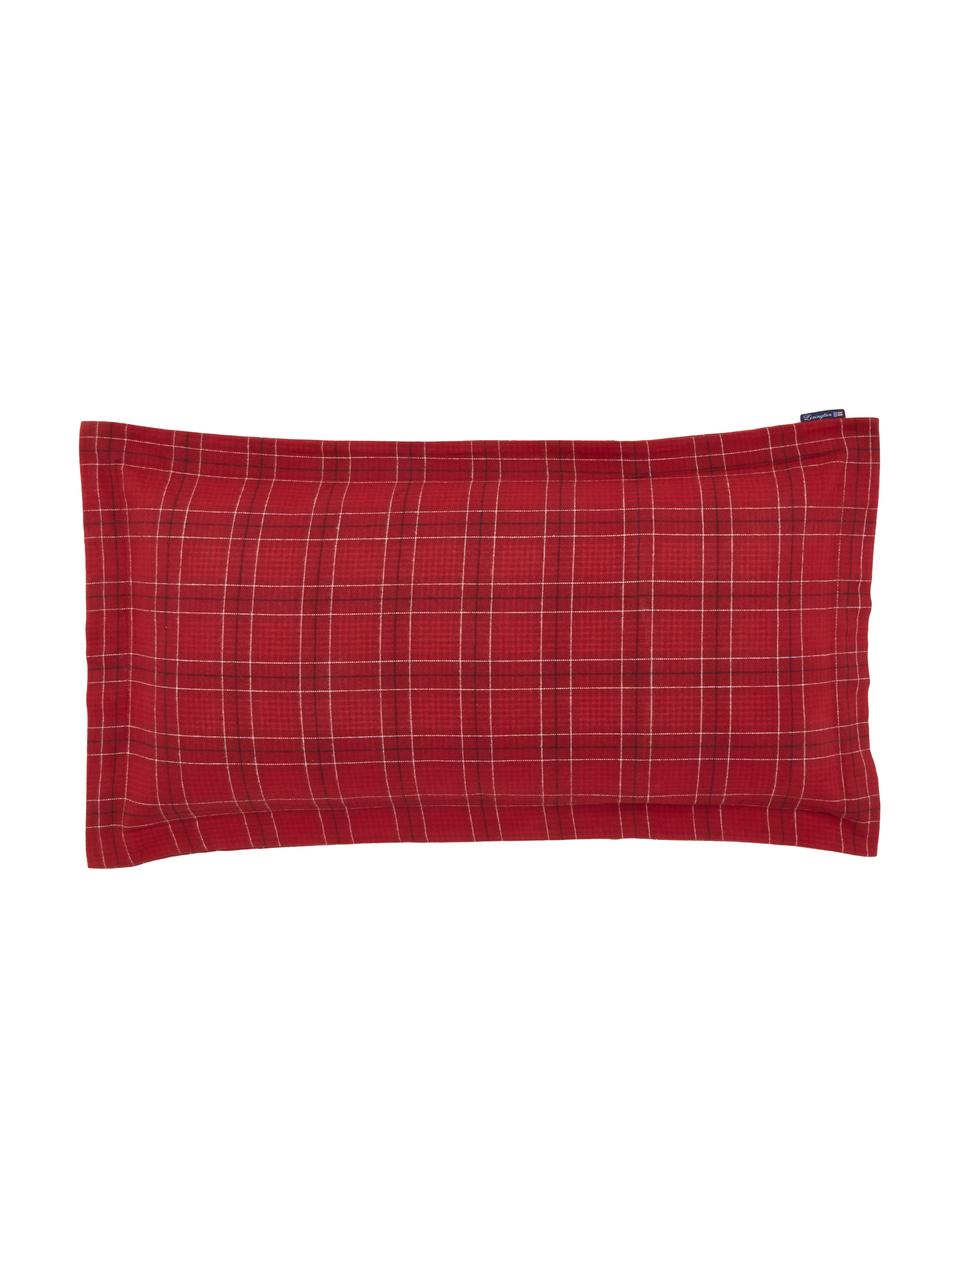 Poszewka na poduszkę Checked, Bawełna, Czerwony, biały, czarny, S 40 x D 80 cm